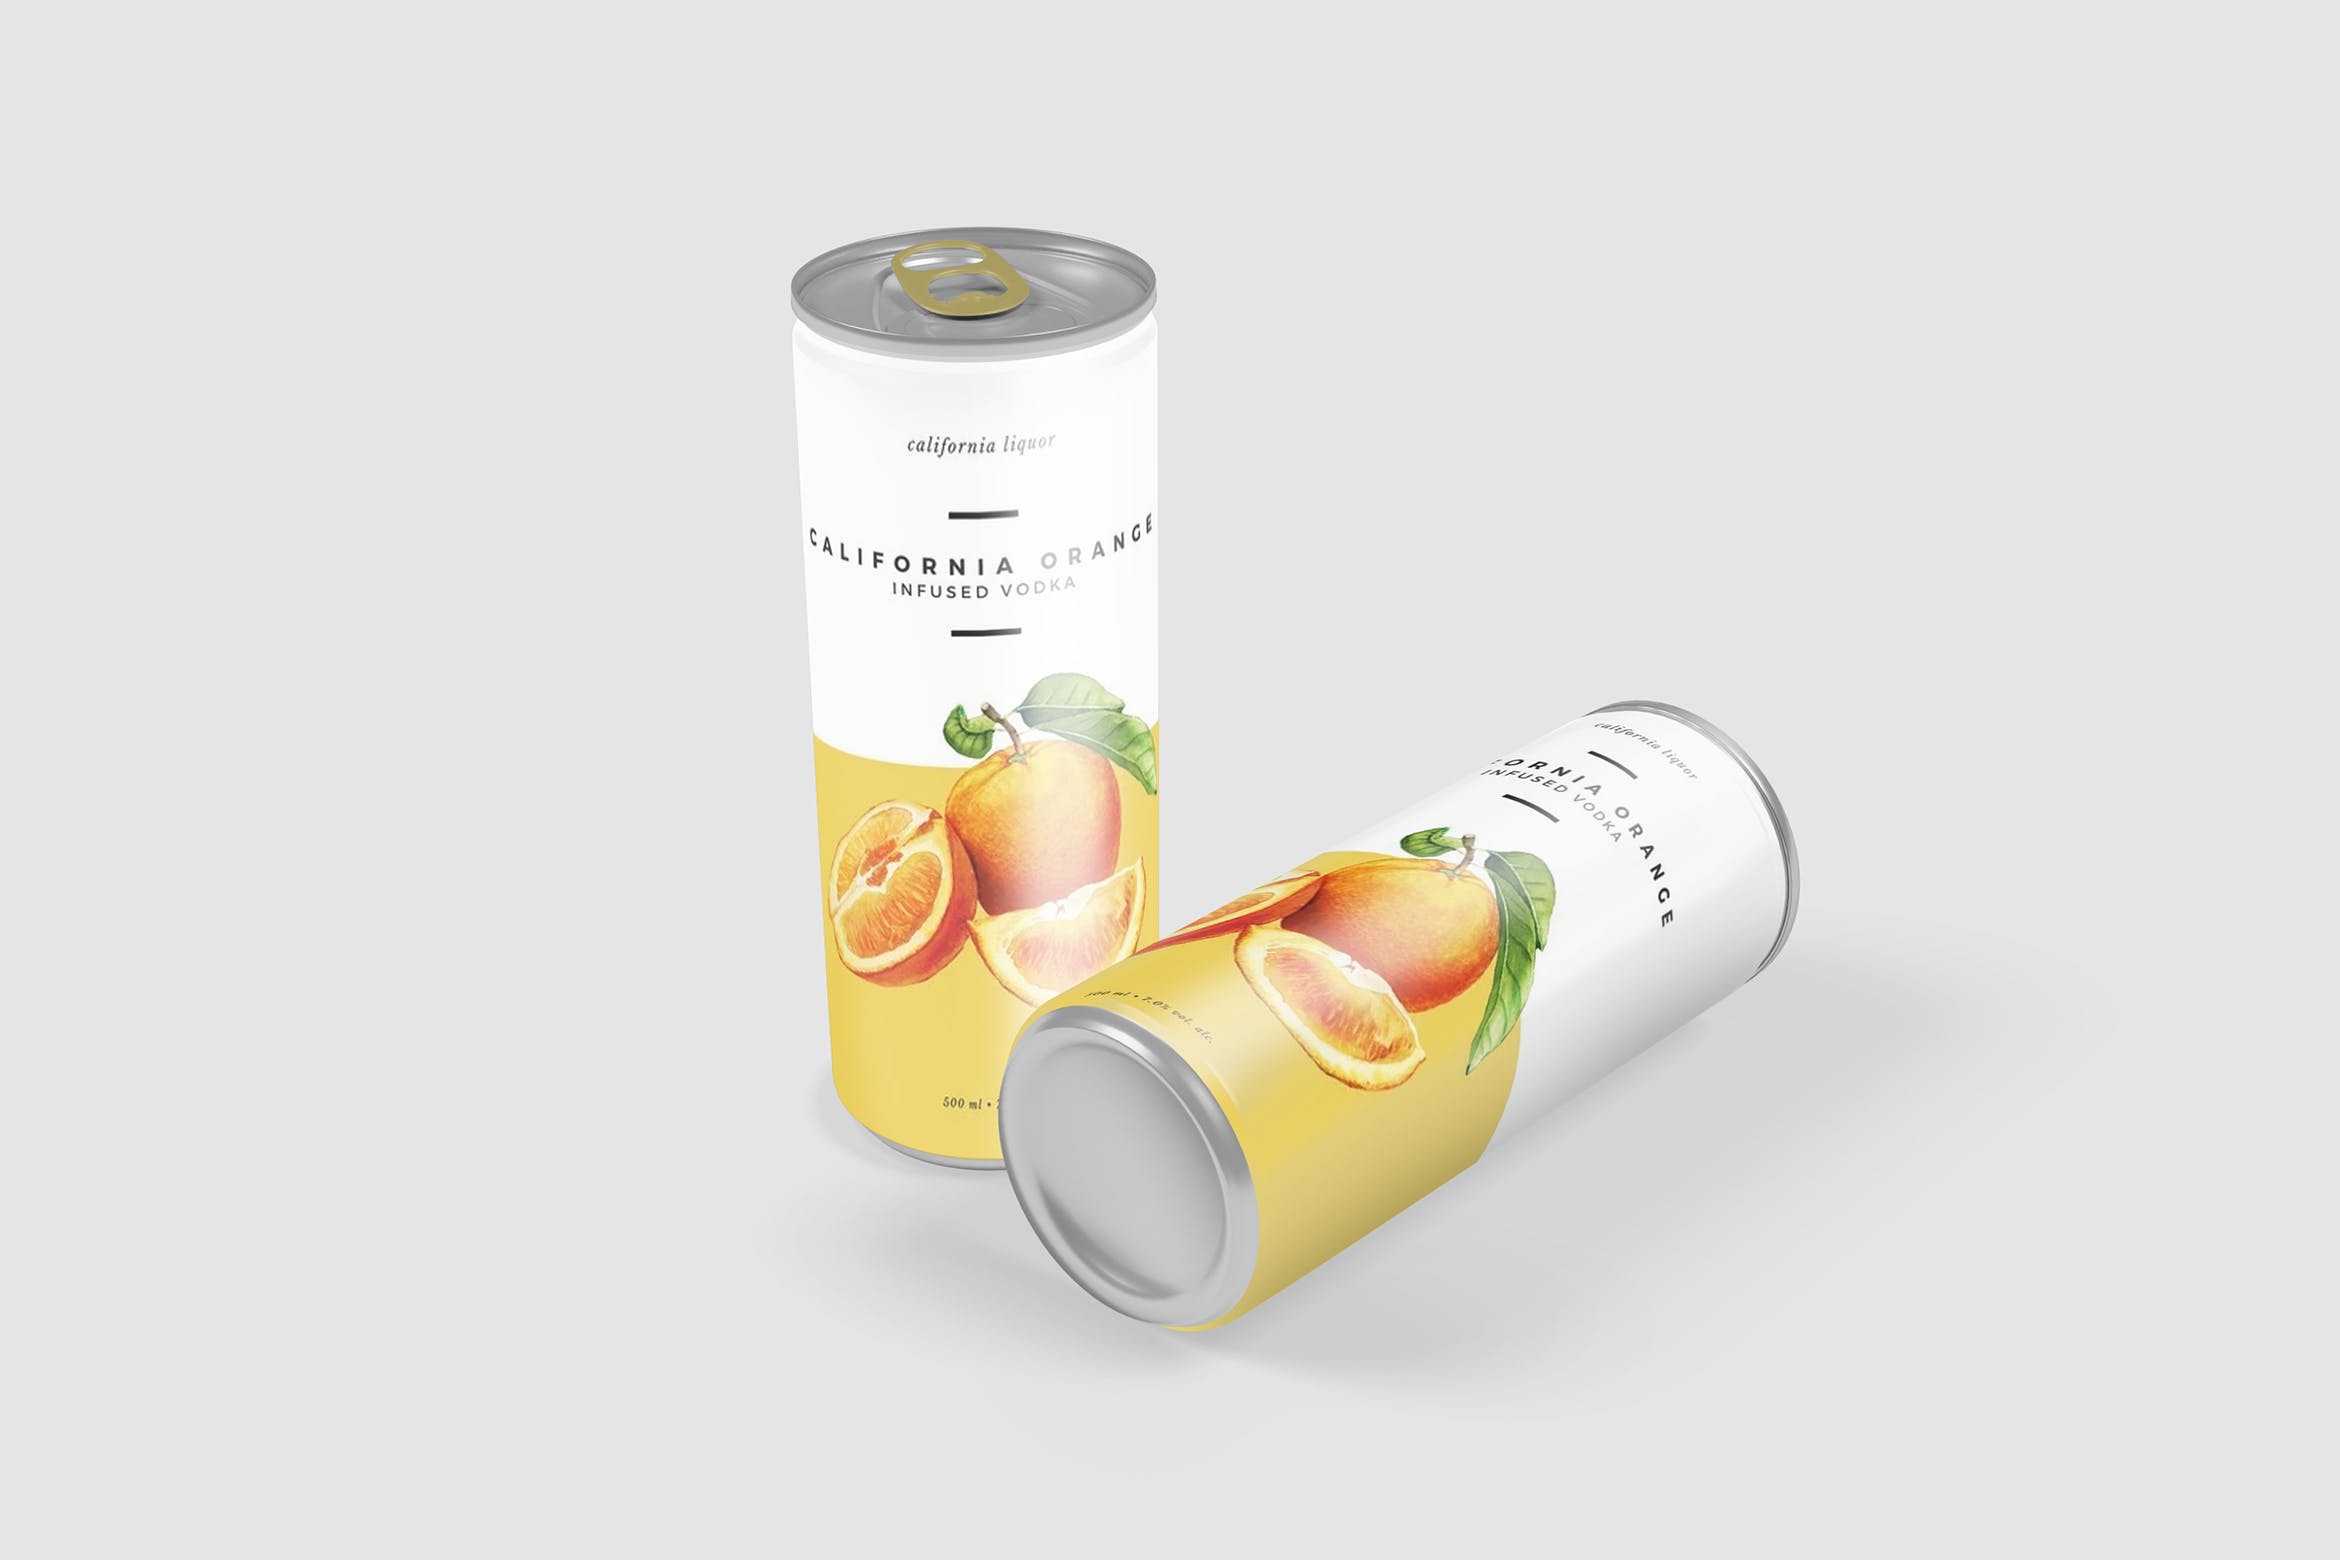 软饮料罐头产品外观设计素材中国精选 Softdrink Can Product Mockup插图